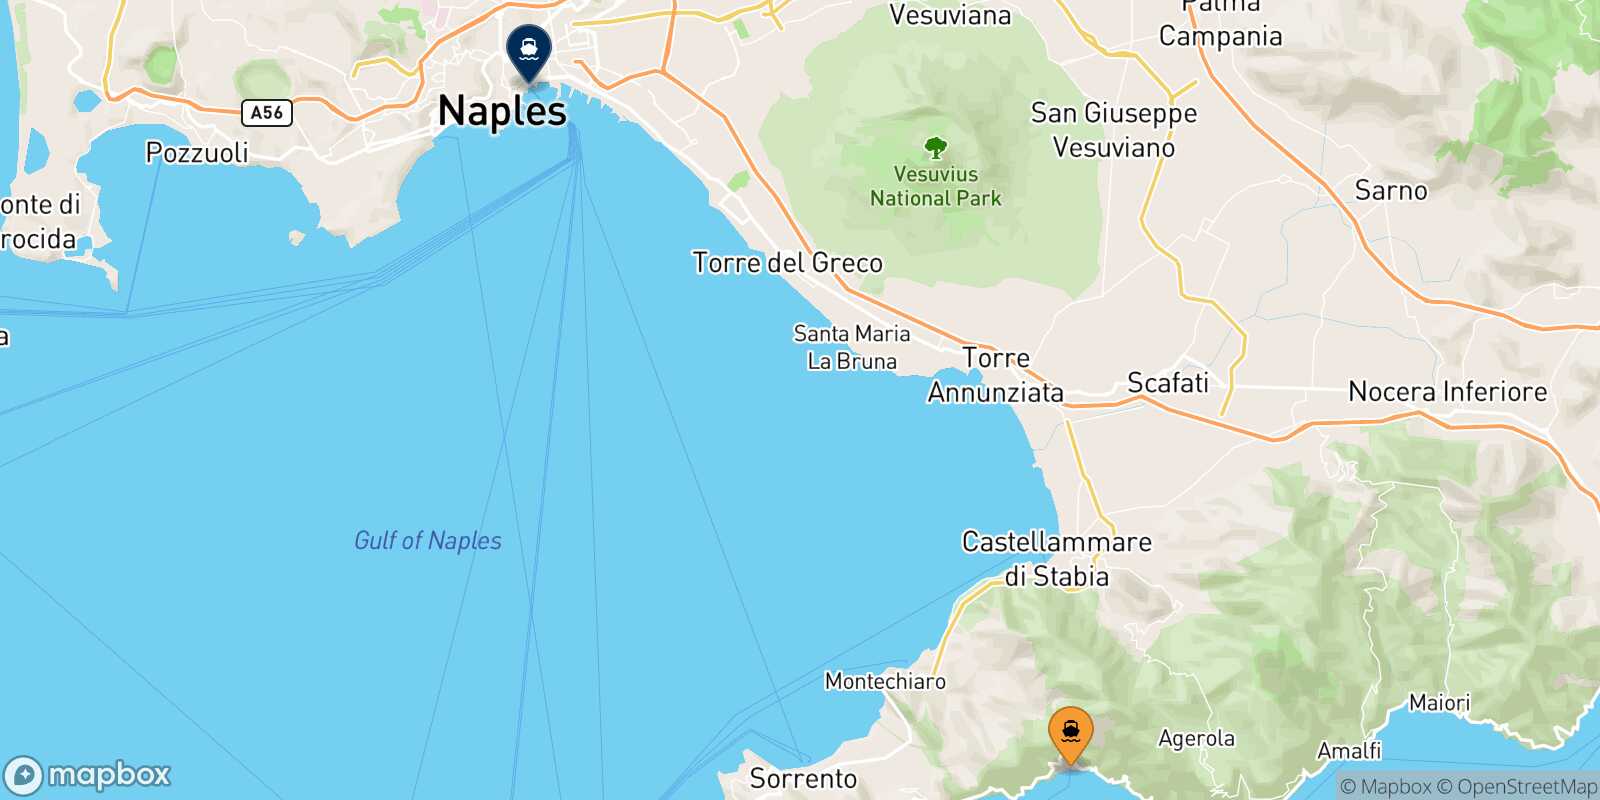 Mapa de la ruta Positano Nápoles Beverello